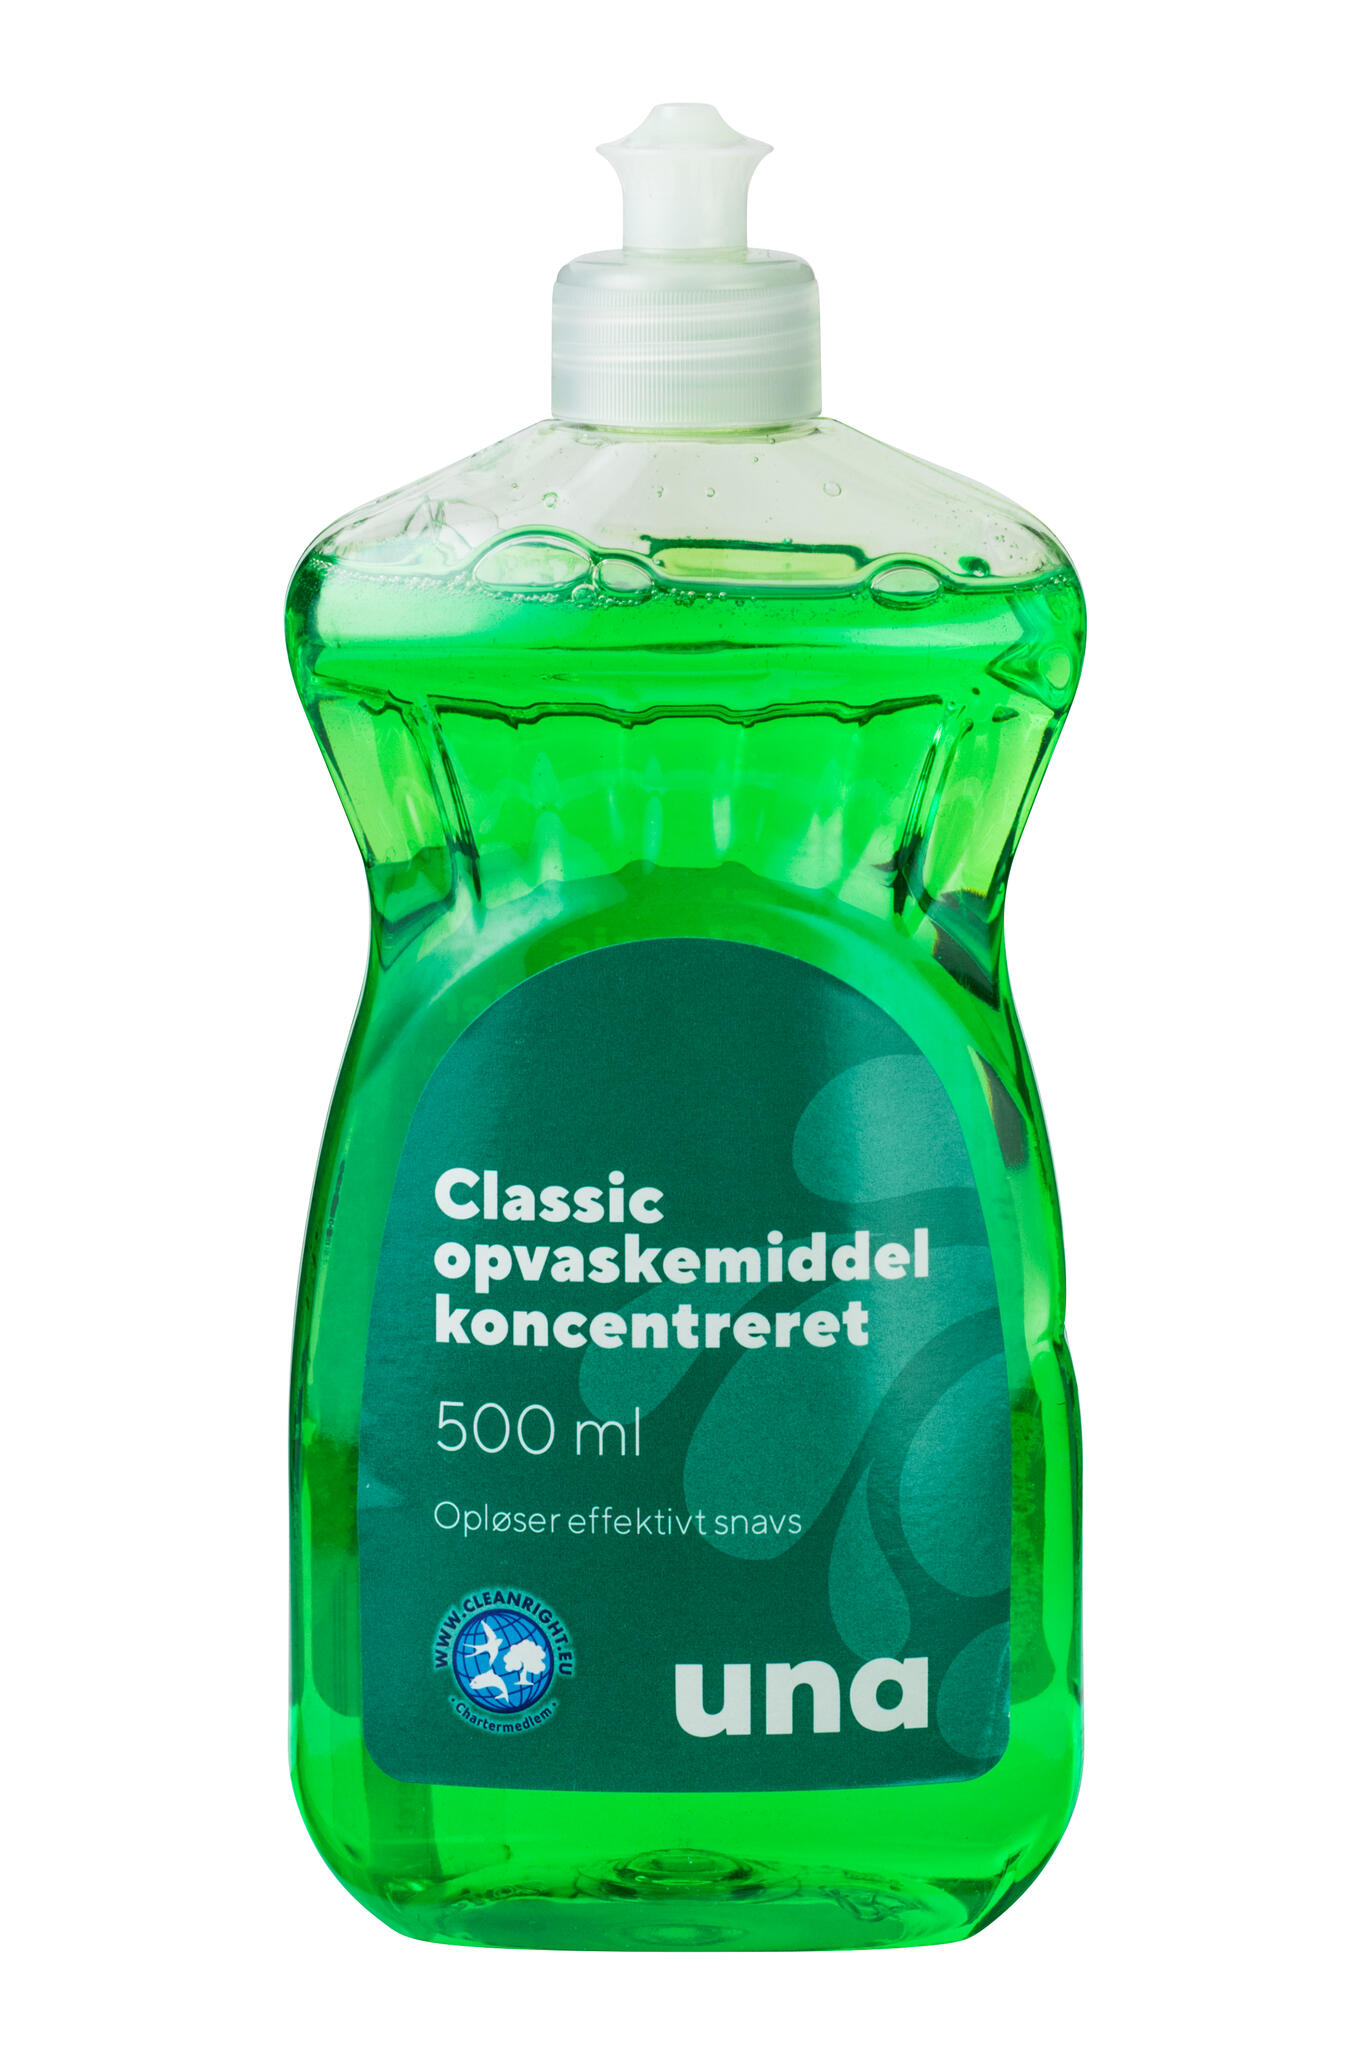 Test: Una Classic opvaskemiddel Koncentreret | Forbrugerrådet